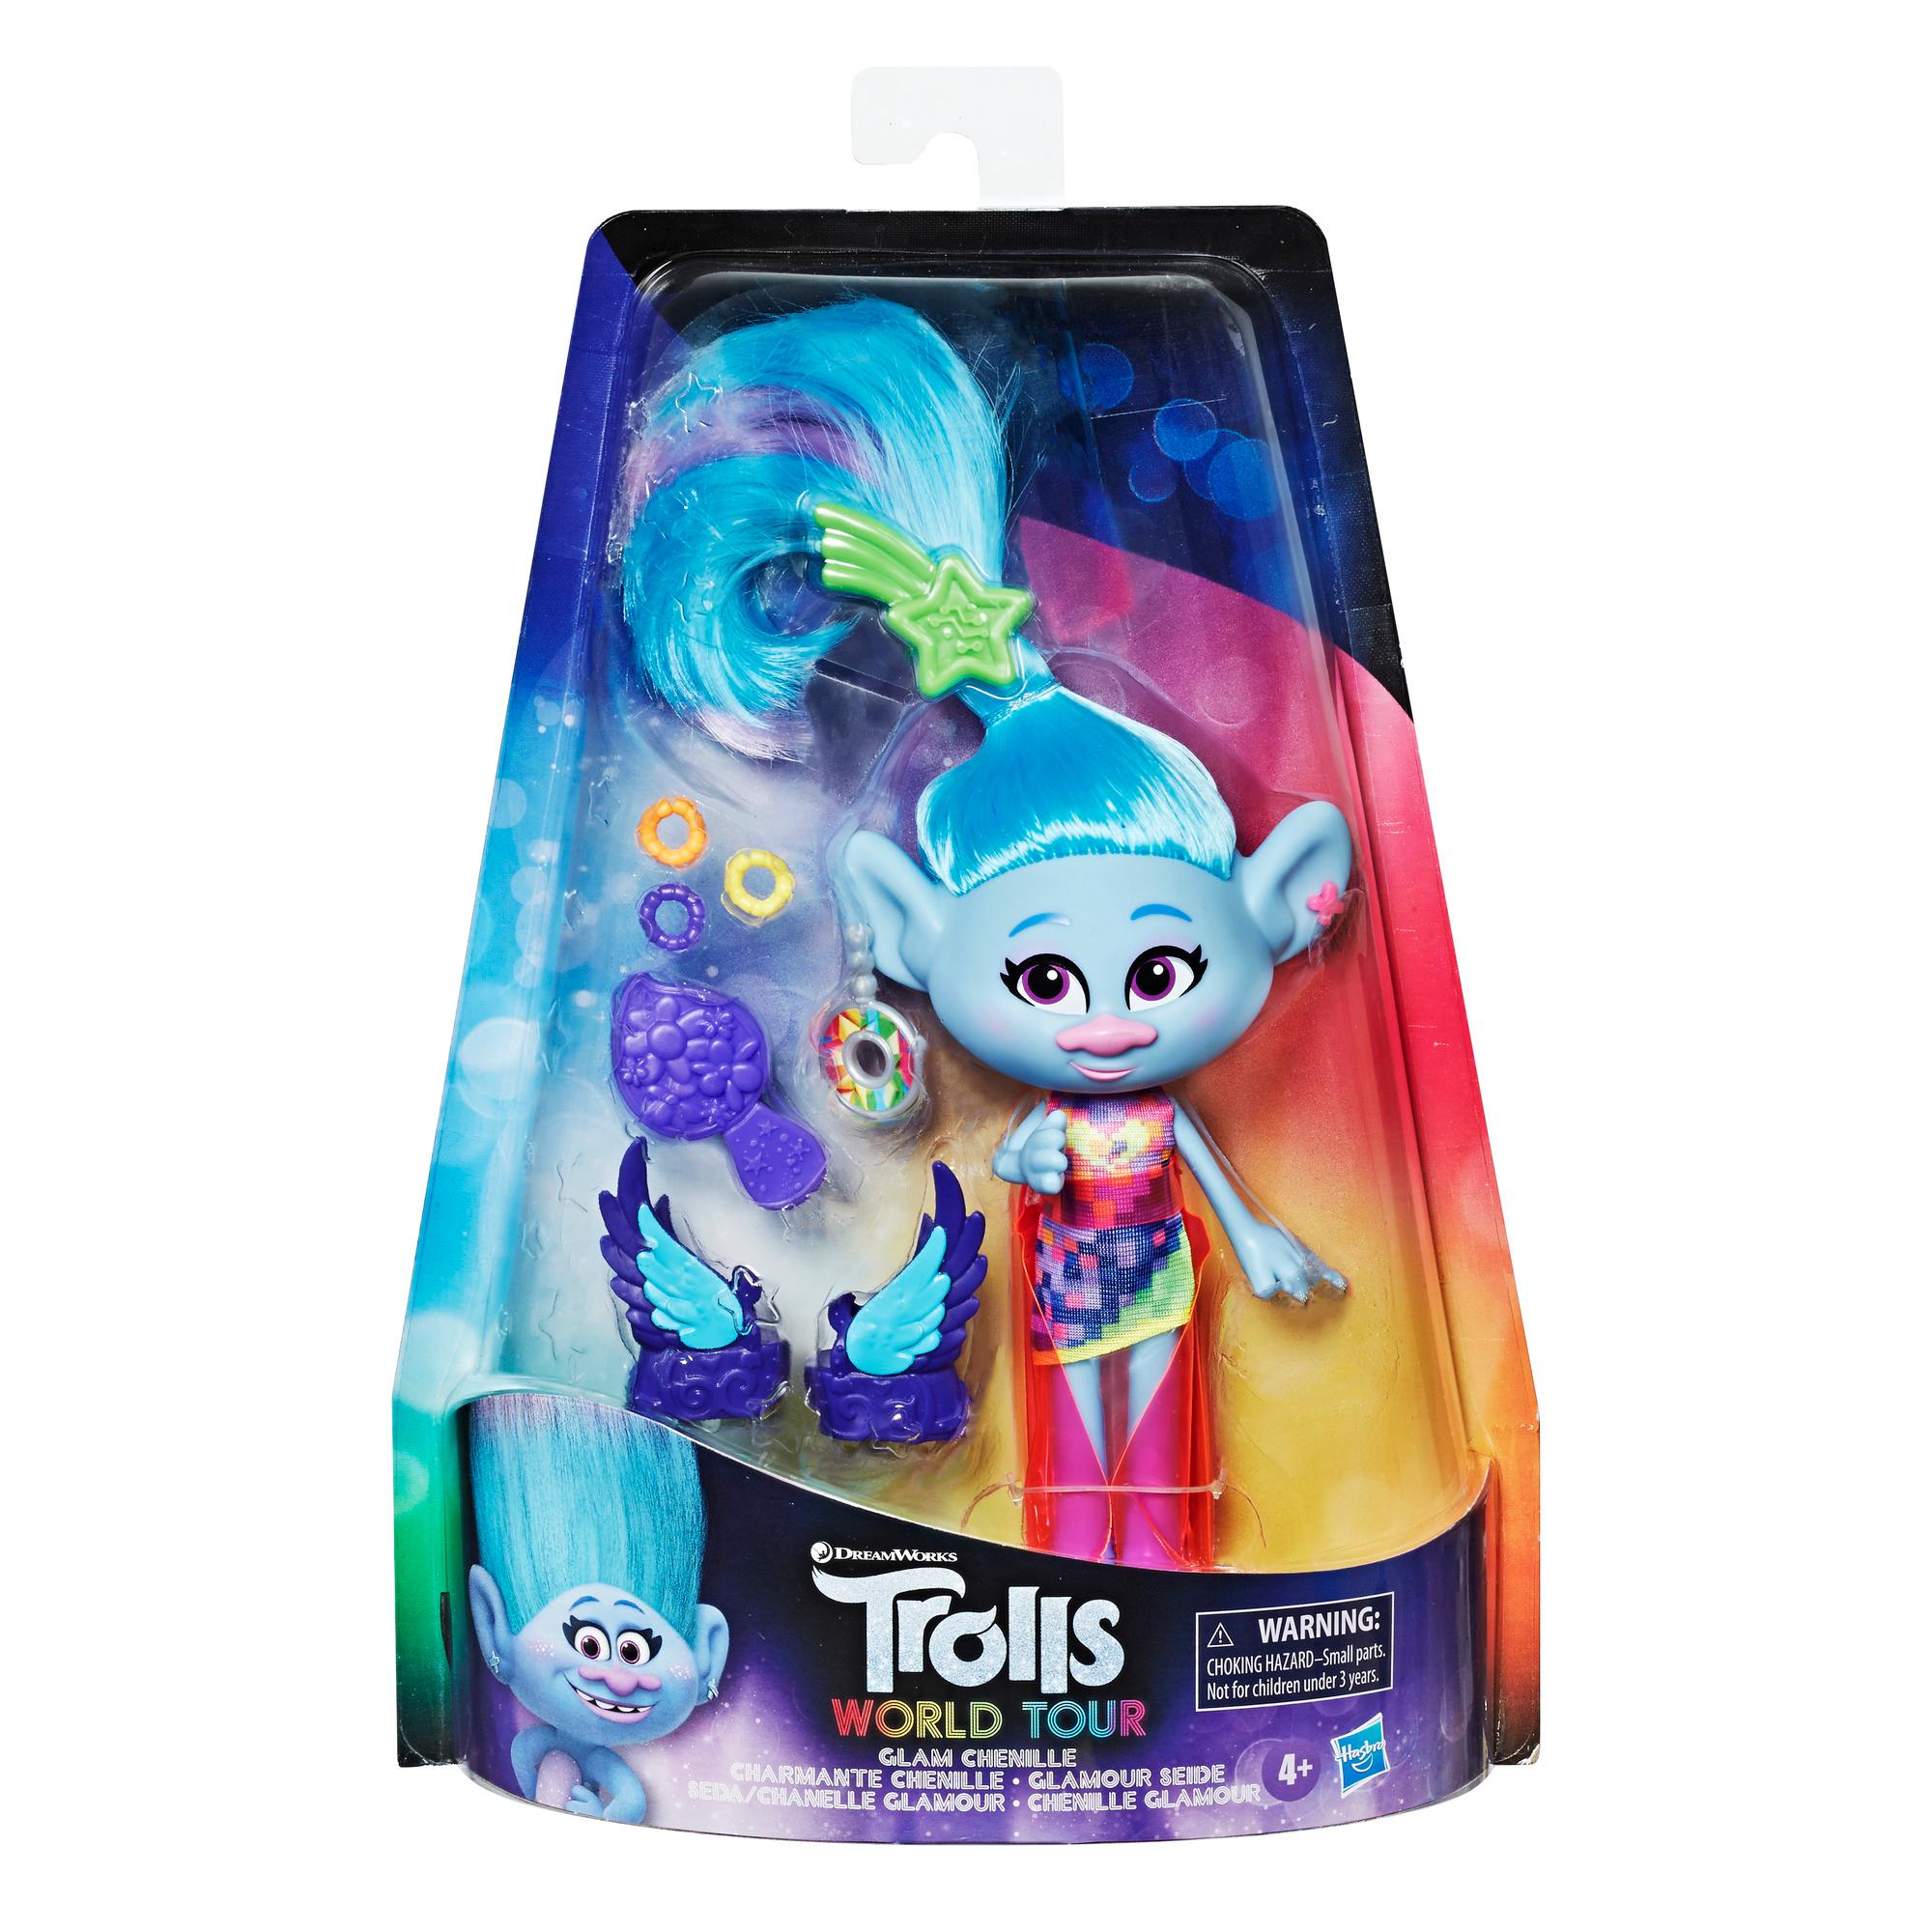 DreamWorks Trolls Chenille Glamour com vestido, sapato e outros acessórios, com inspiração no filme Trolls World Tour, brinquedo para crianças